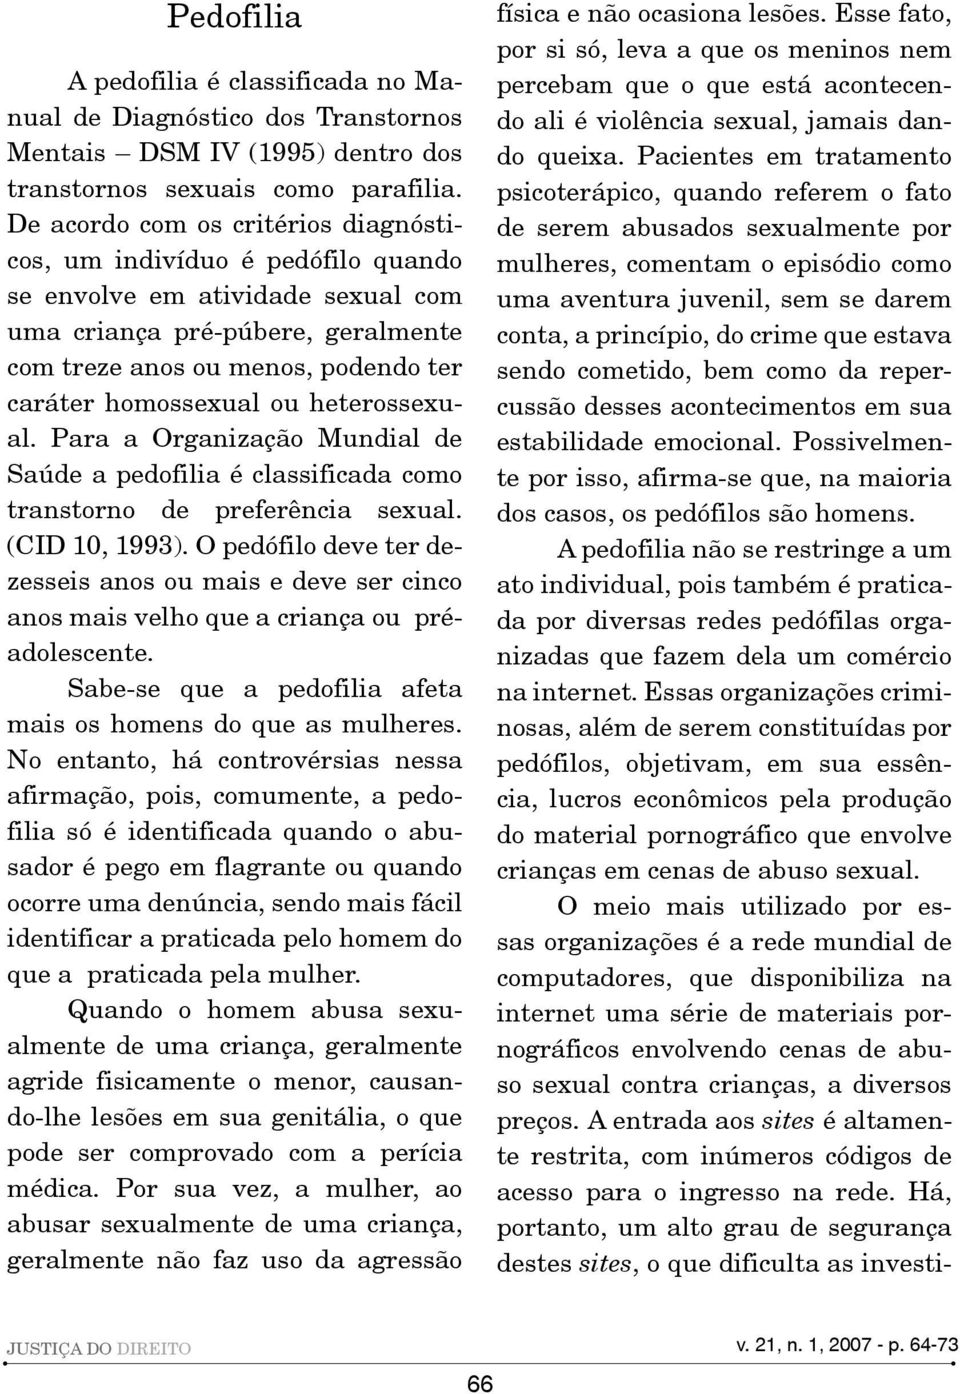 ou heterossexual. Para a Organização Mundial de Saúde a pedofilia é classificada como transtorno de preferência sexual. (CID 10, 1993).